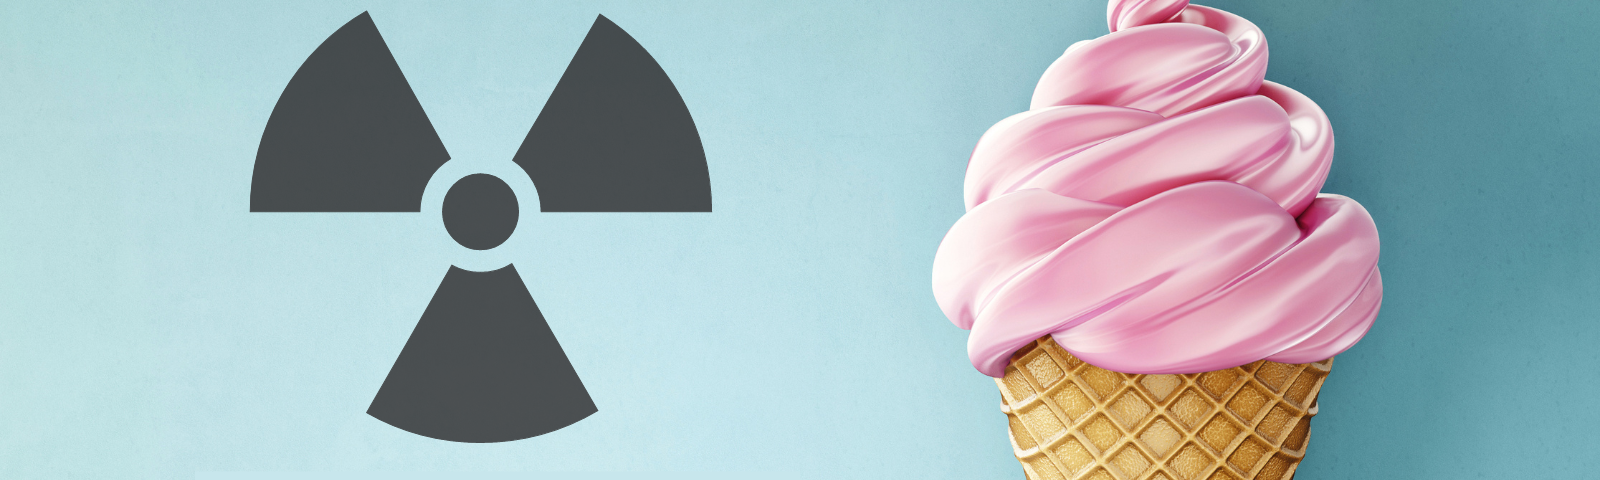 Un helado de color rosa. Una imagen de radiación, y abajo dice: radioactivo.